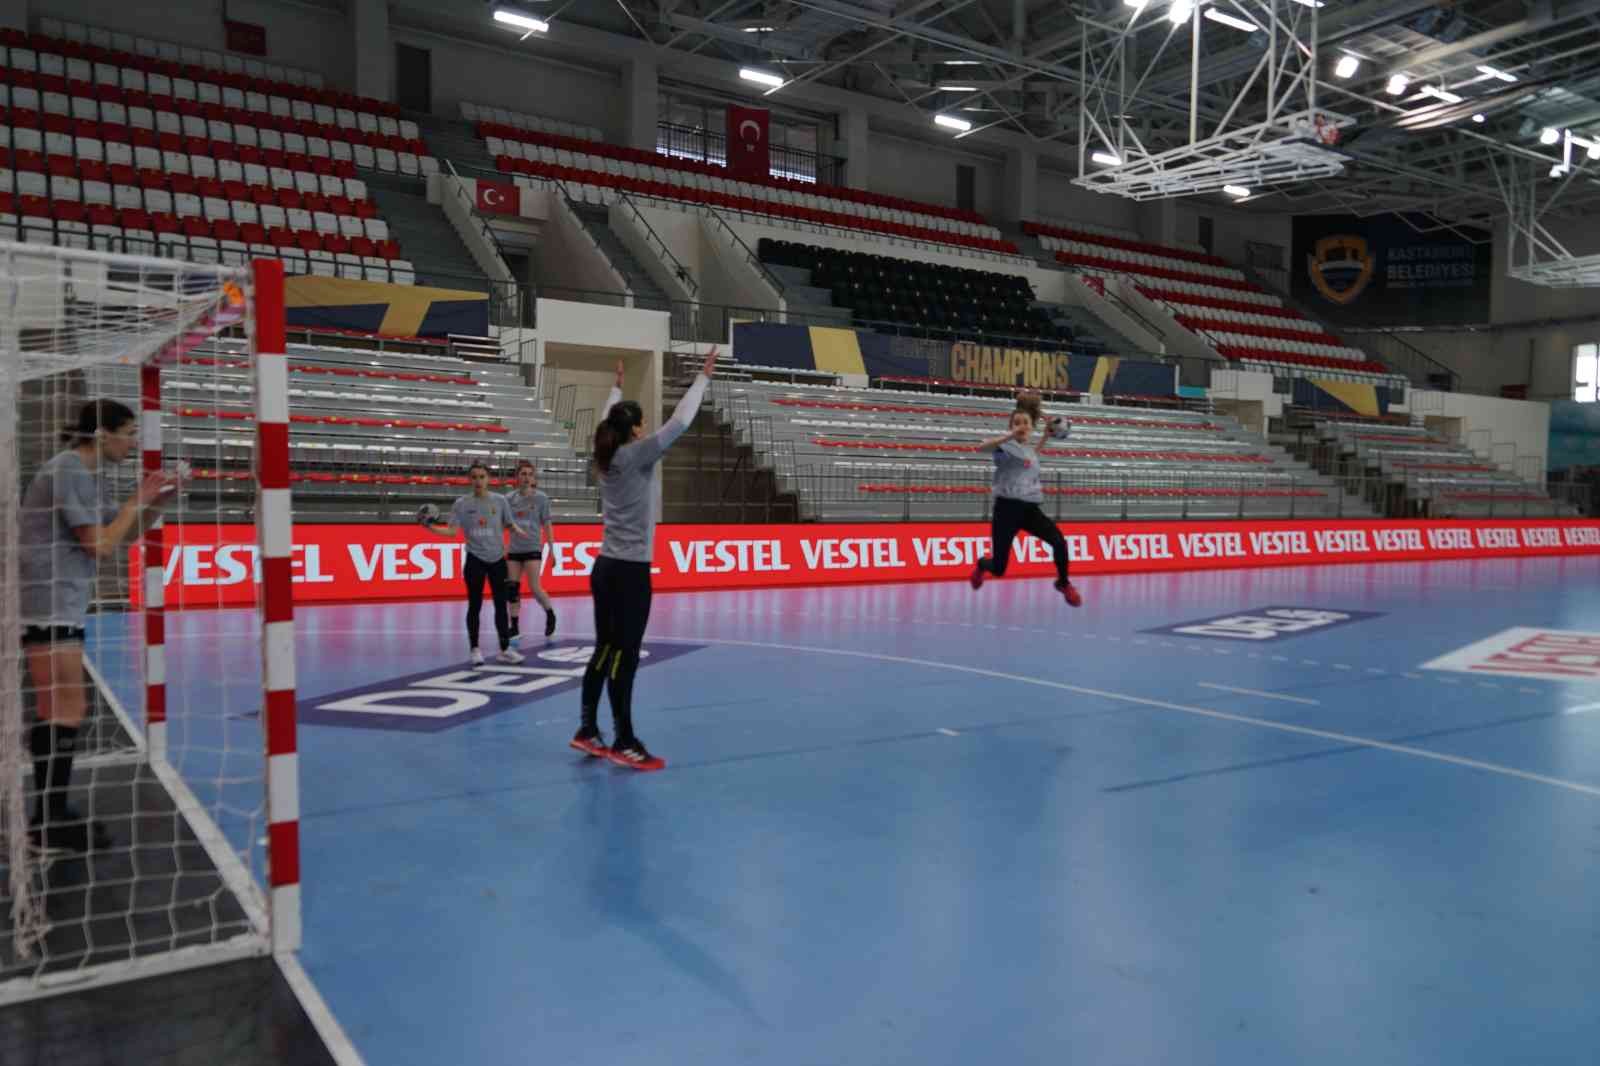 Kastamonu Belediyespor, Şampiyonlar Ligi karşılaşması için hazırlıklarını tamamladı #kastamonu